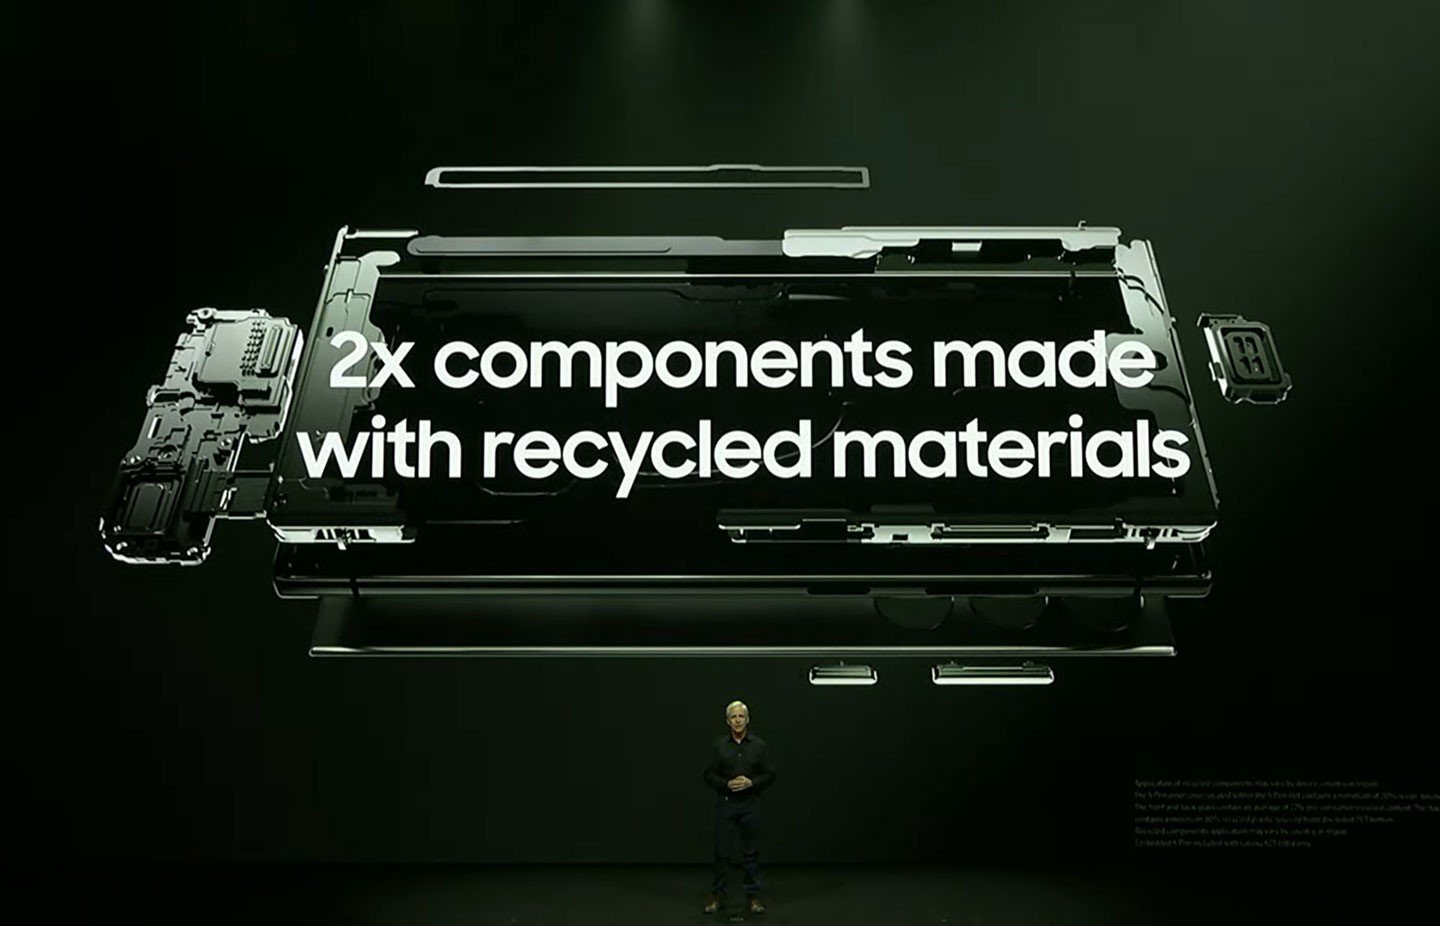 相較於前一代有 6 個元件採用回收再生素材，今年的 Galaxy S23 將回收再生素材使用的比例提升至兩倍的 12 個元件之多。